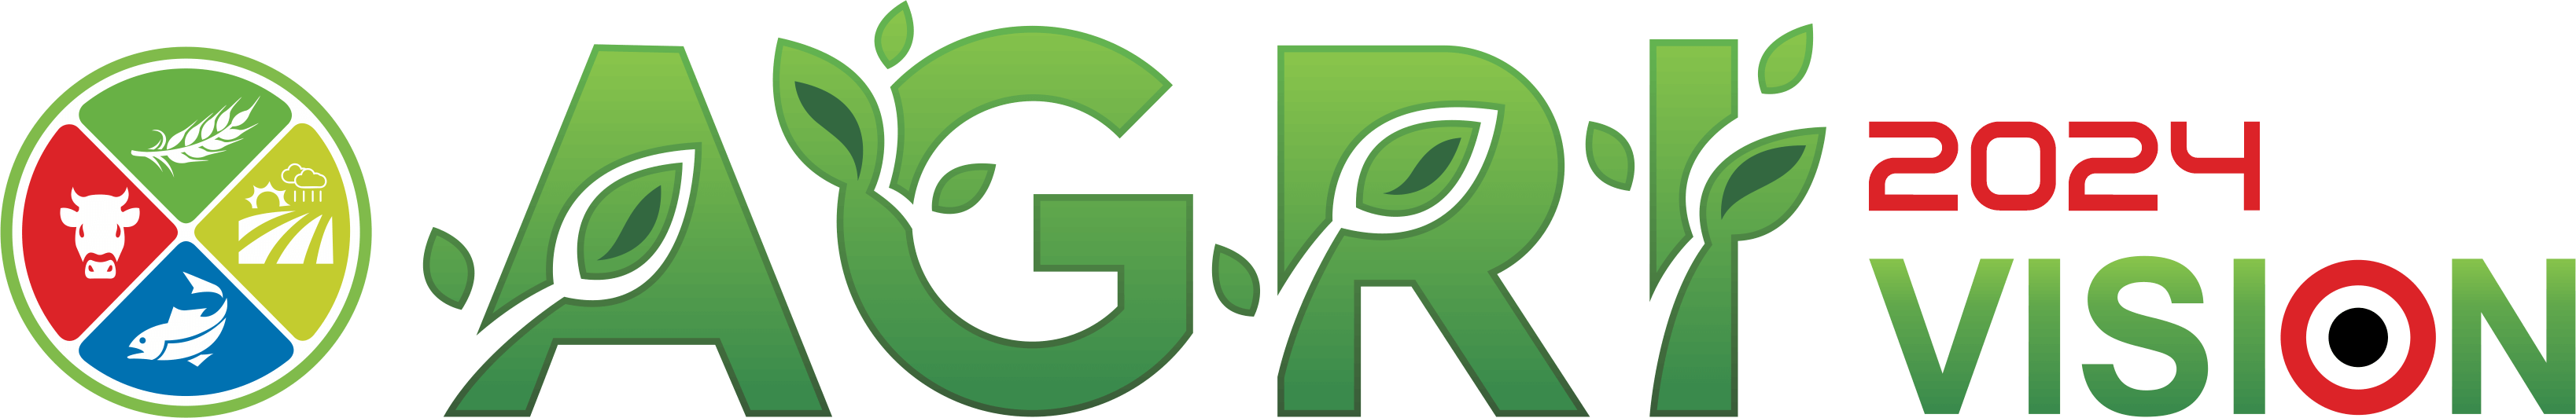 Agri Vision Logo